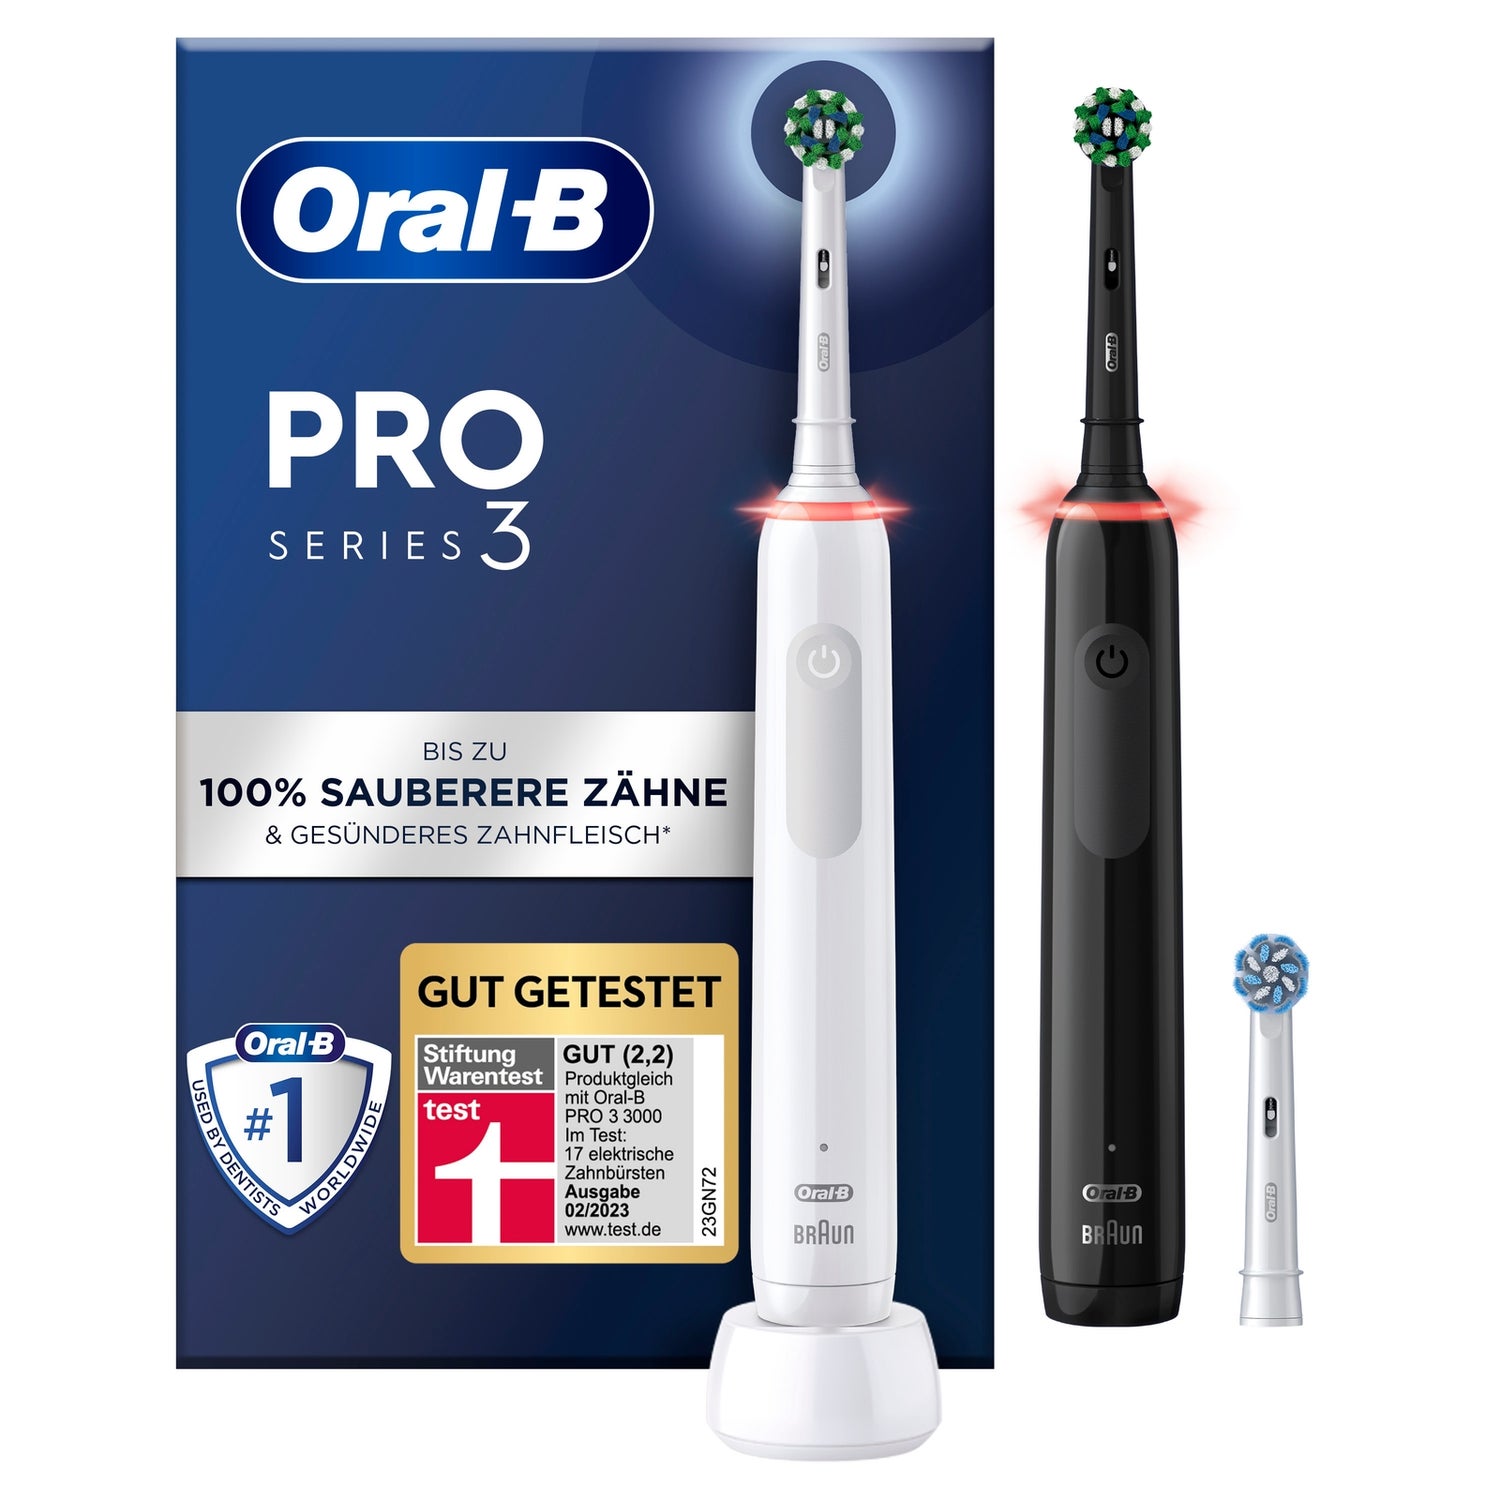 Oral-B Pro 3 - 3900 Elektrische Zahnbürste, Black / White